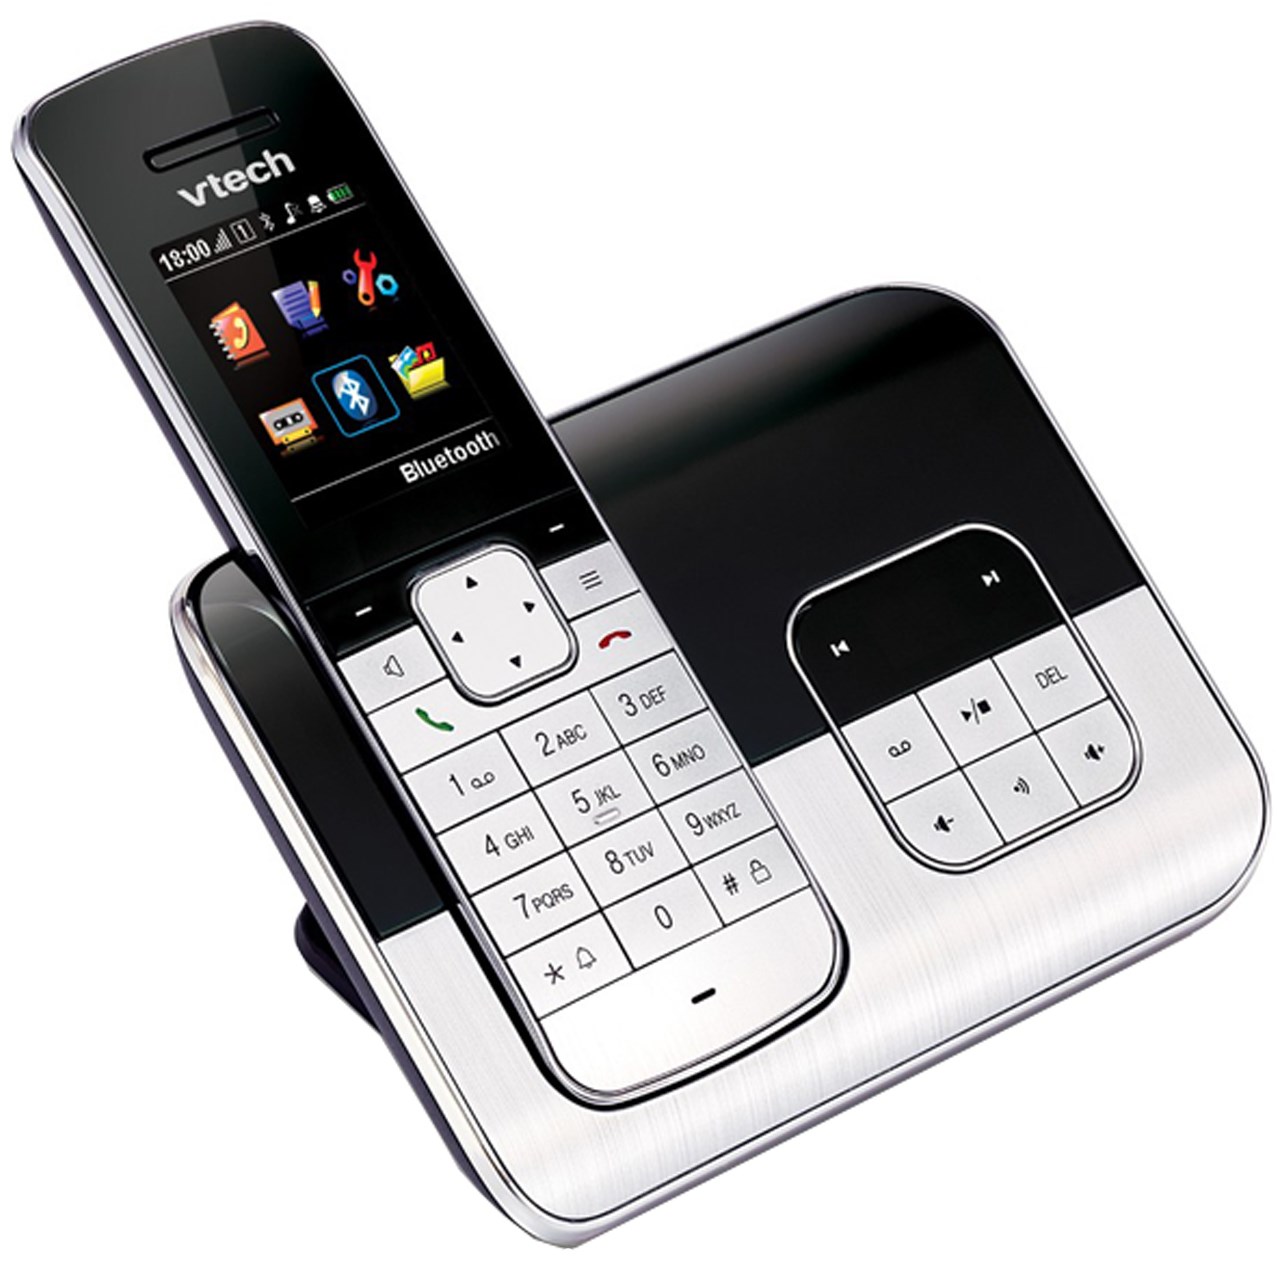 نکته خرید - قیمت روز تلفن بی سیم وی تک مدل FS6325 خرید